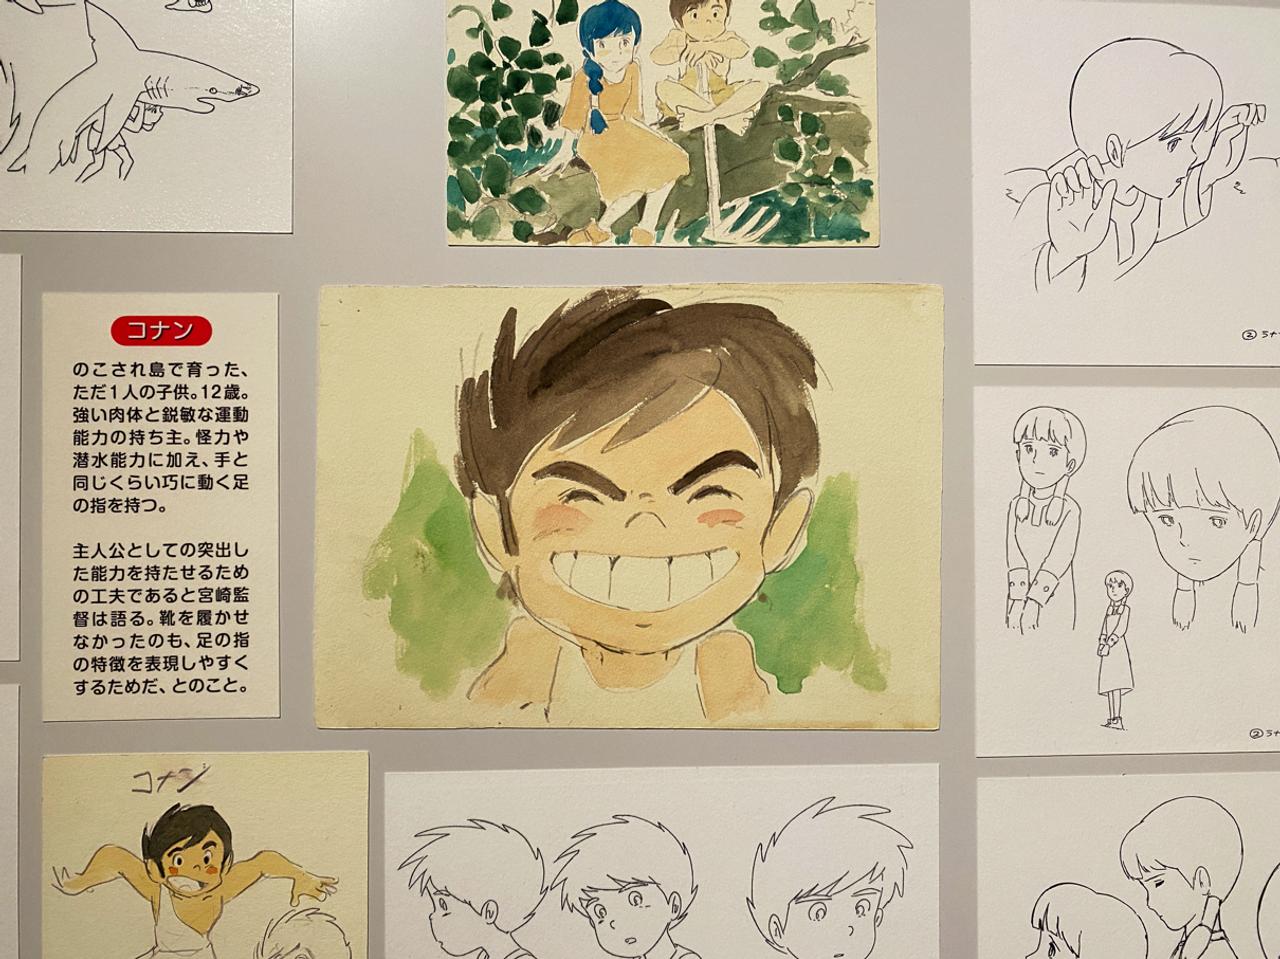 コナンのイメージボード。宮崎監督が作品をつくるにあたり、キャラクタ０ヤシ０ンなど、浮かんできたイメージを具体的にするために描いてみたもの。